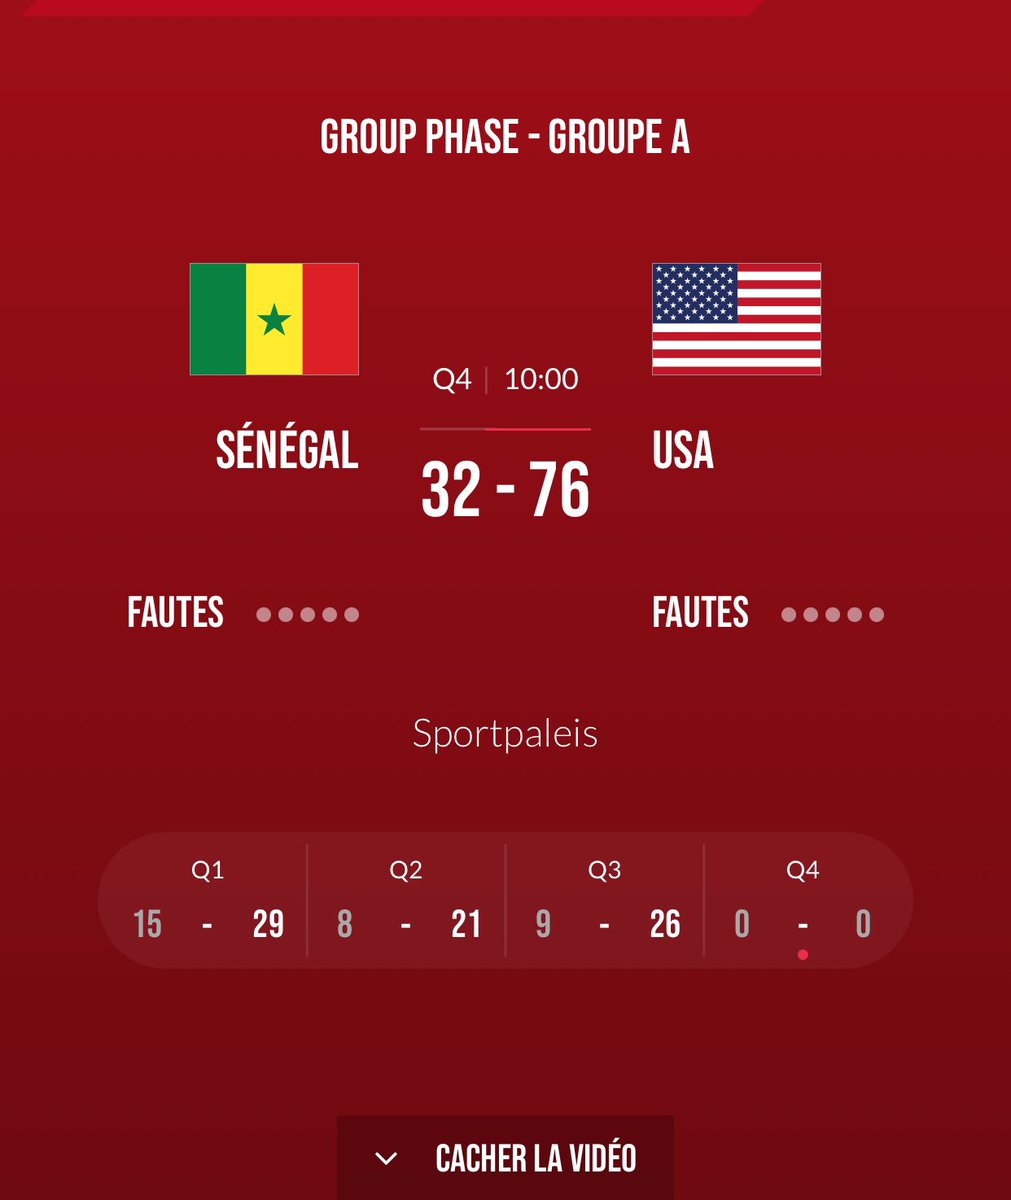 TOURNOI QUALIFICATIF AUX JEUX OLYMPIQUES ANVERS 2024 DAY 3️⃣ 3QT SÉNÉGAL 🇸🇳 3️⃣2️⃣— 7️⃣6️⃣ 🇺🇸USA #FIBAOQT #SENEGAL #BASKETBALL